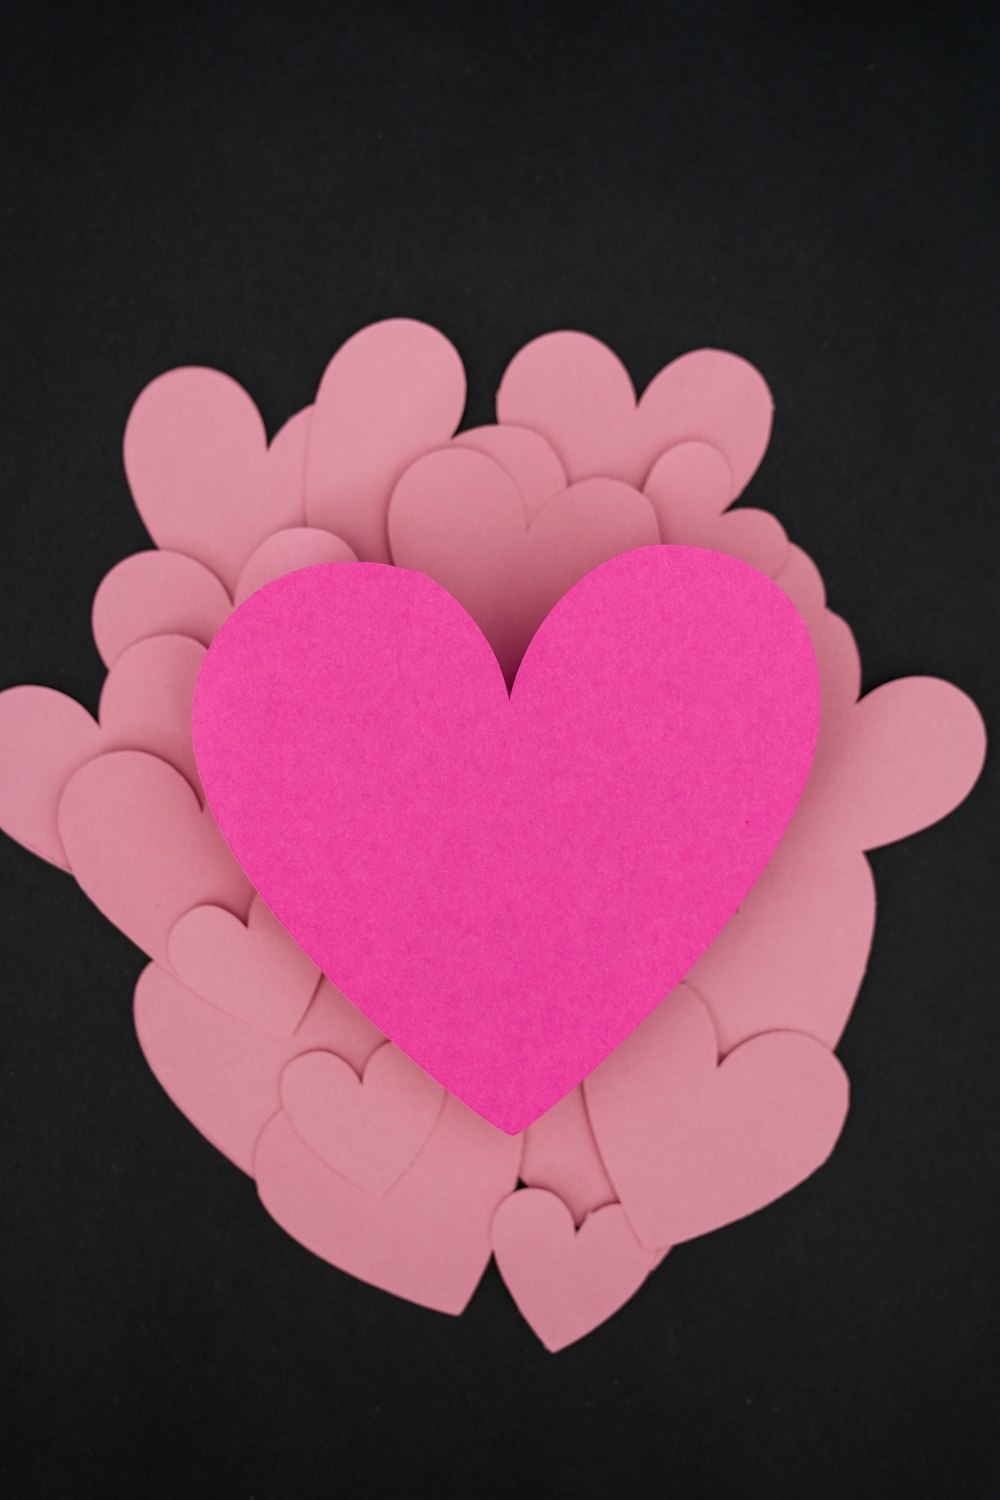 Ein rosa Herz umgeben von rosa Herzen auf schwarzem Hintergrund